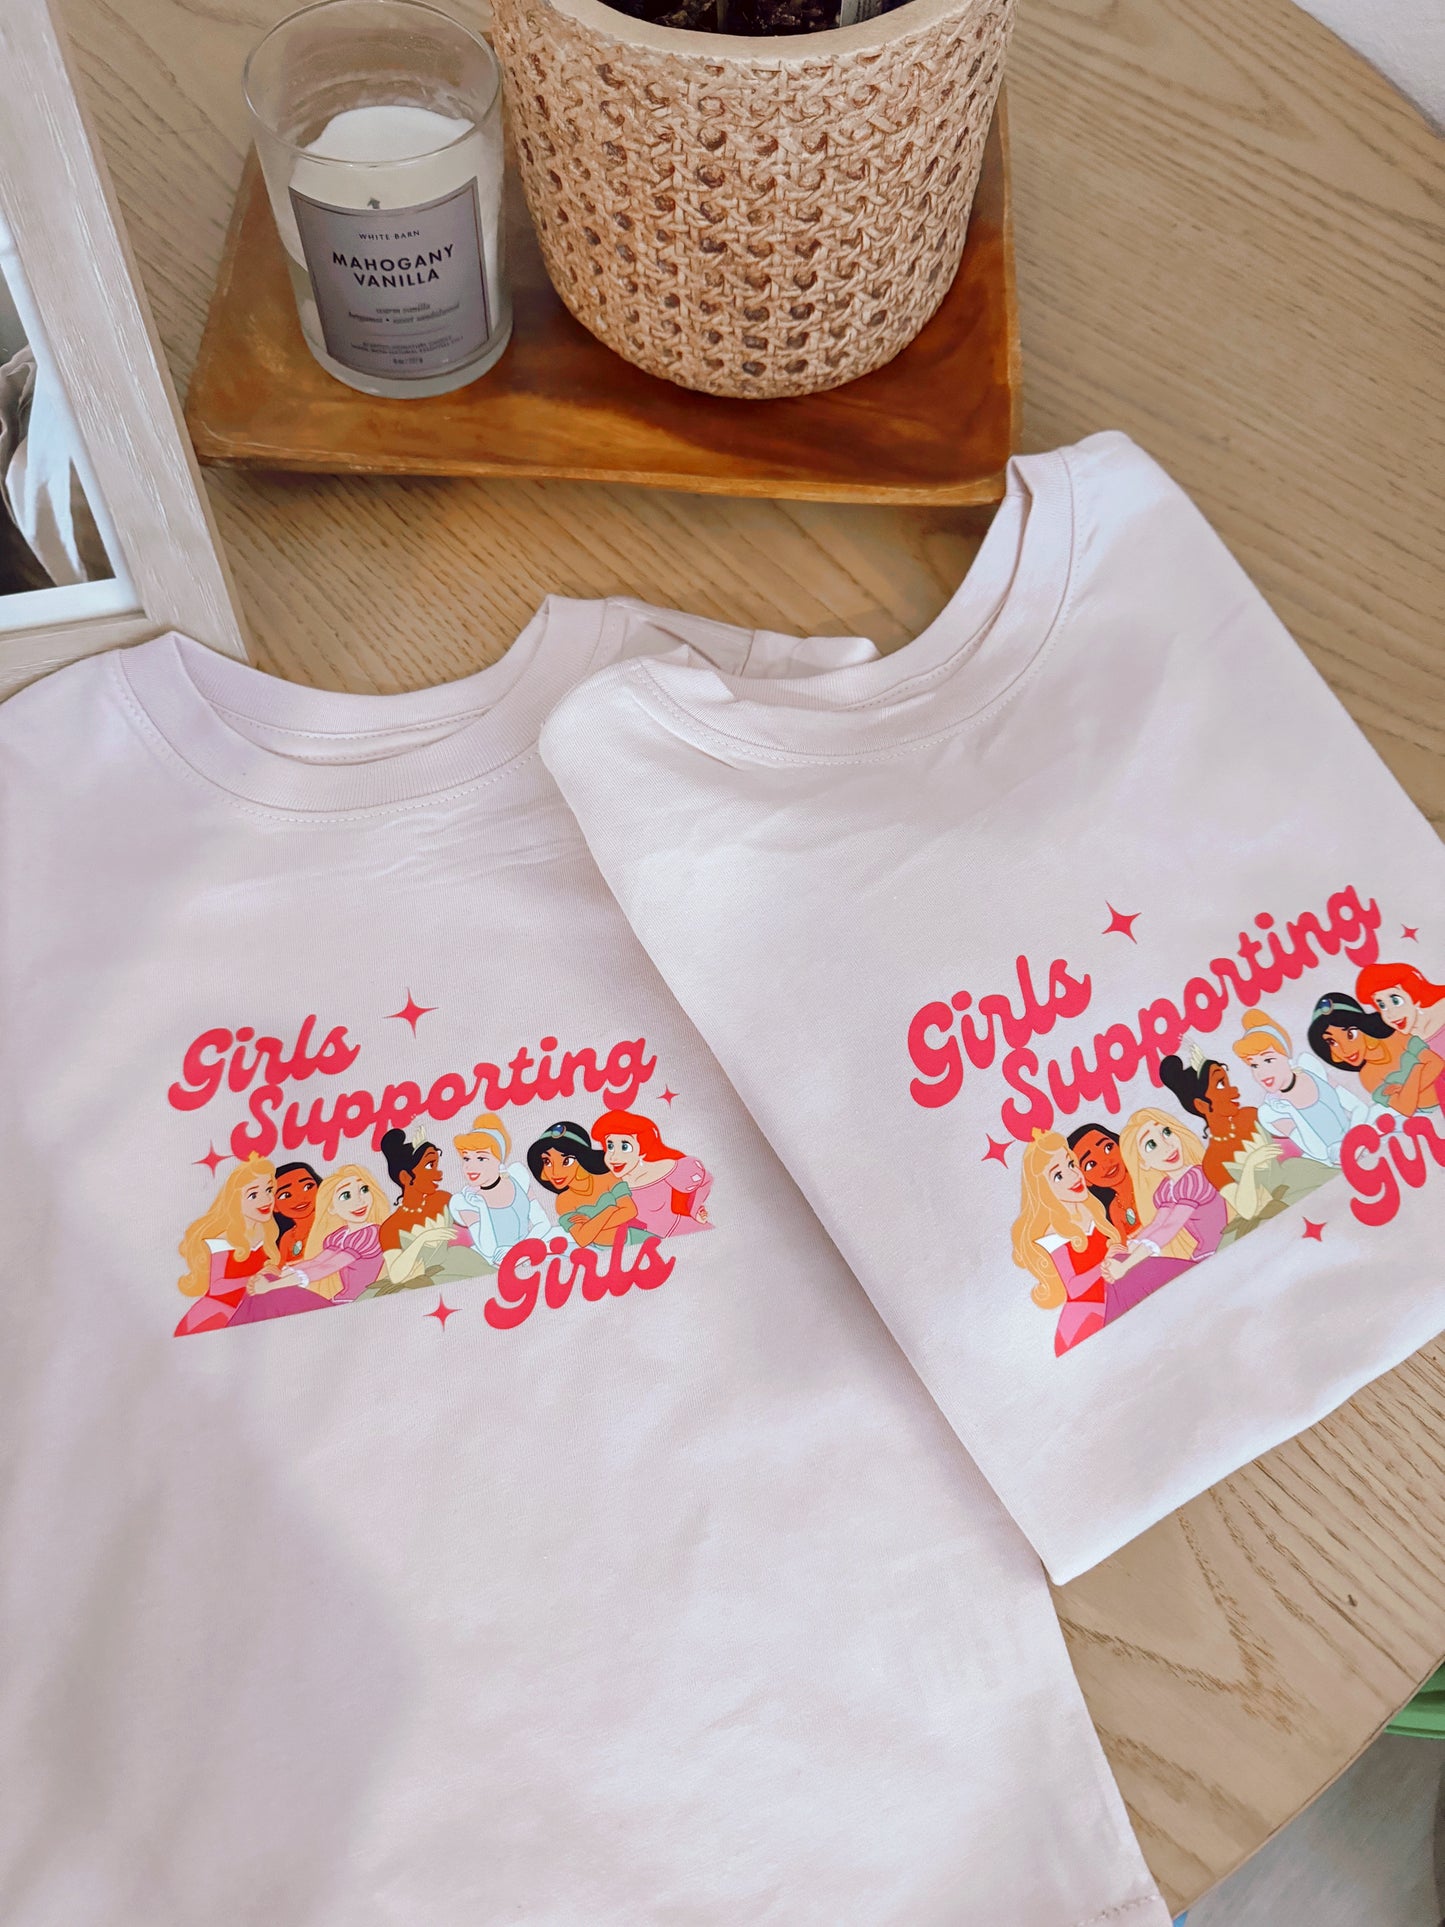 Girls Support Girls Princess Kids T-shirt